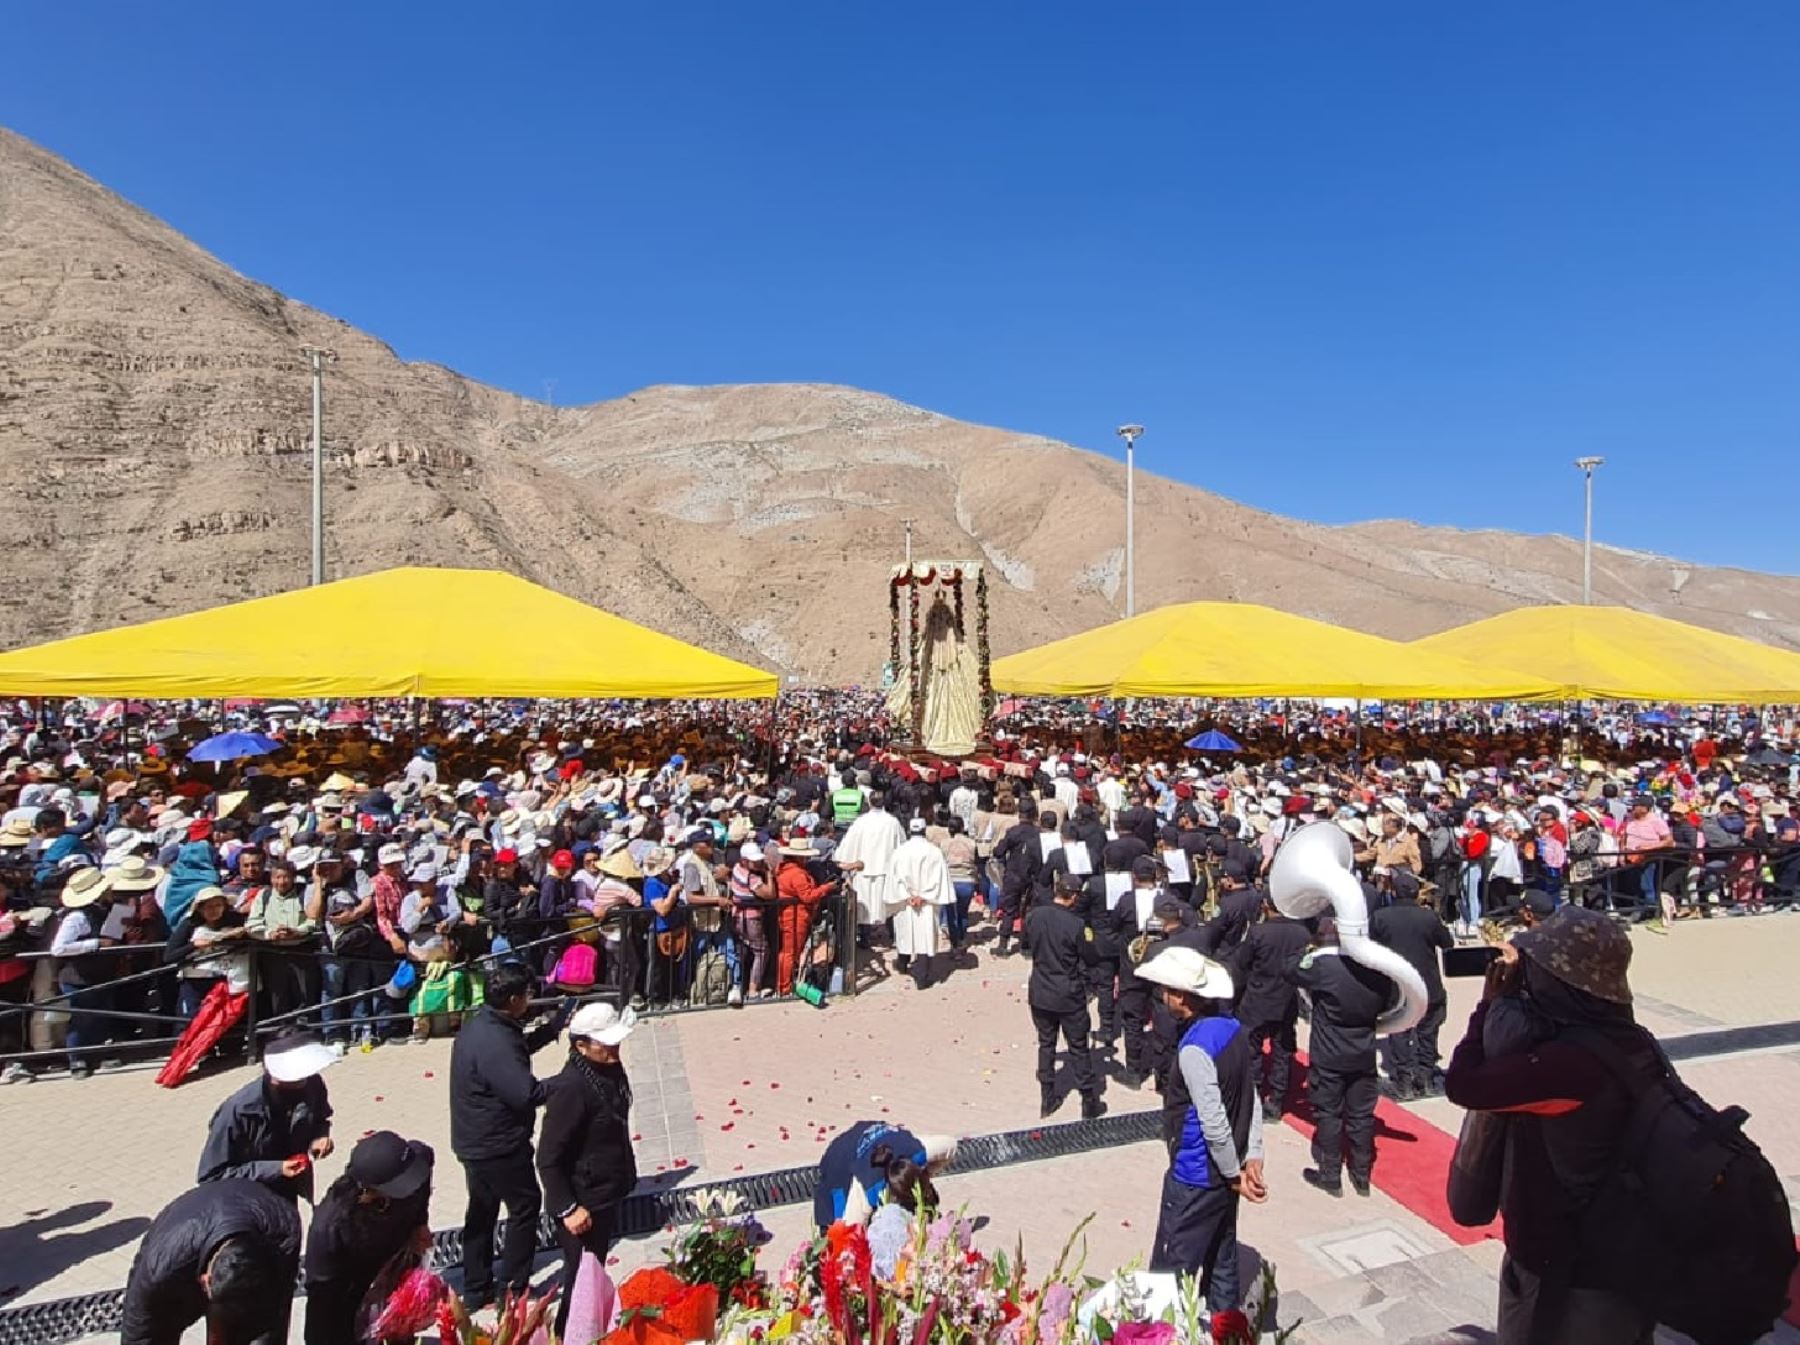 Más de 200,000 fieles visitaron el santuario de la Virgen de Chapi durante los días centrales de la festividad de la patrona de Arequipa. Foto: Rocío Méndez